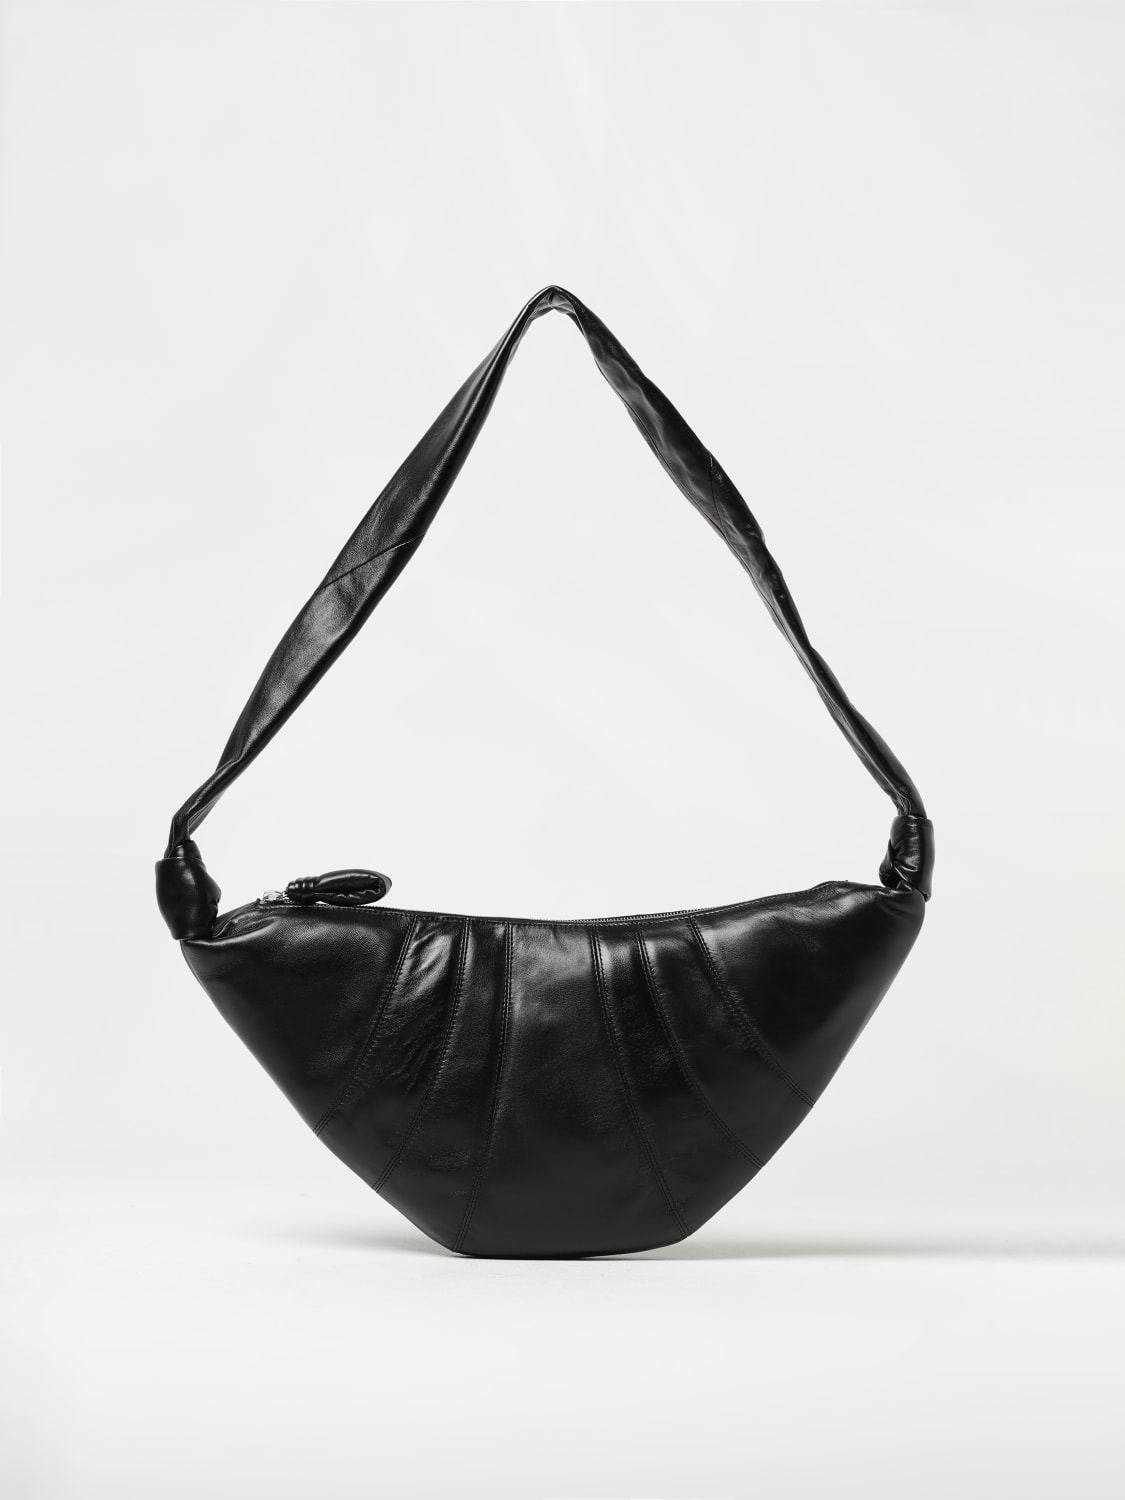 Lemaire Black Small Satchel Bag Lemaire